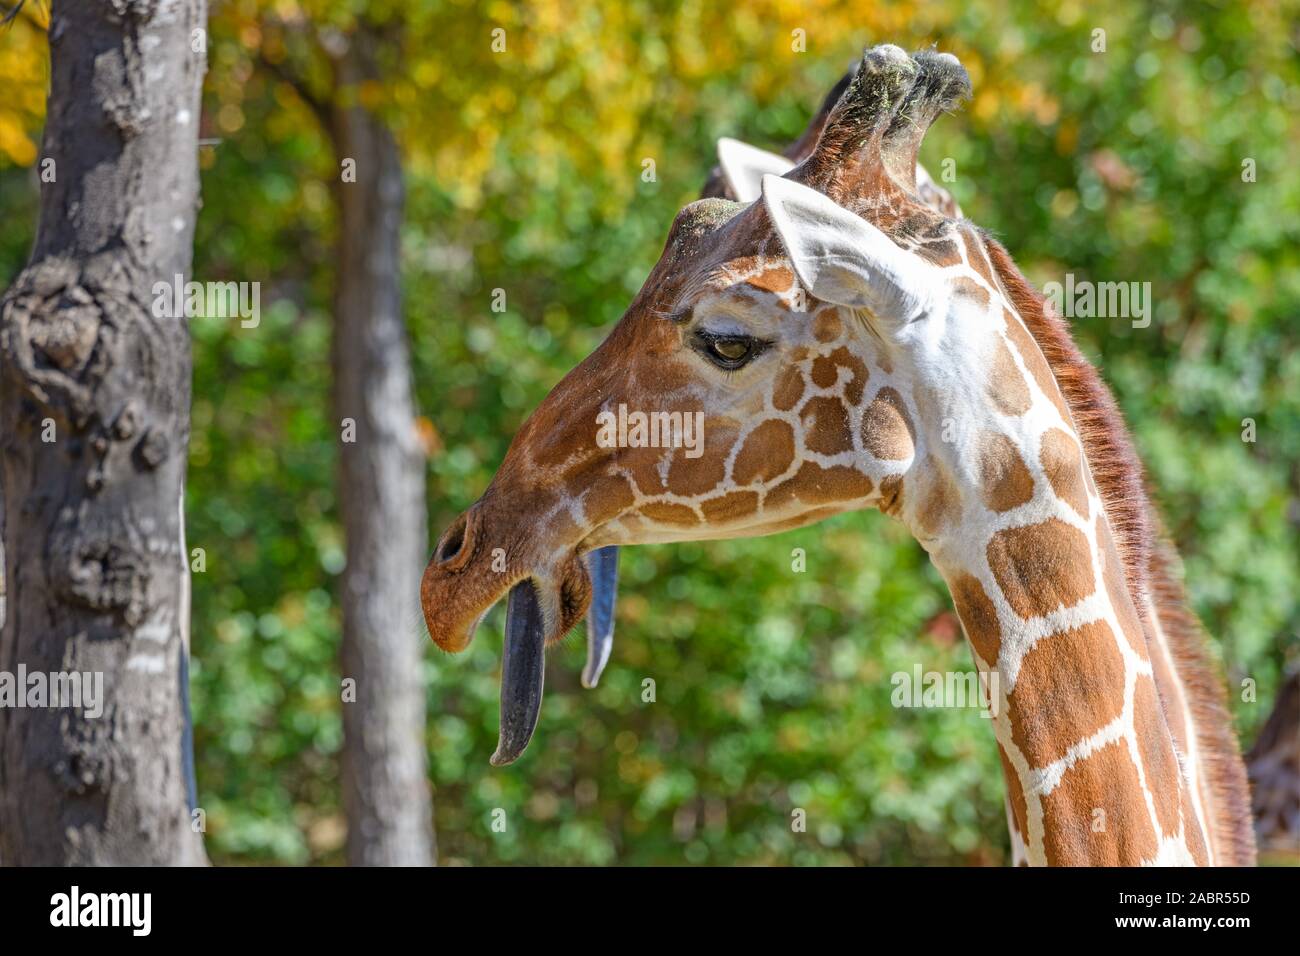 Girafe (Giraffa) avec sa langue. Banque D'Images